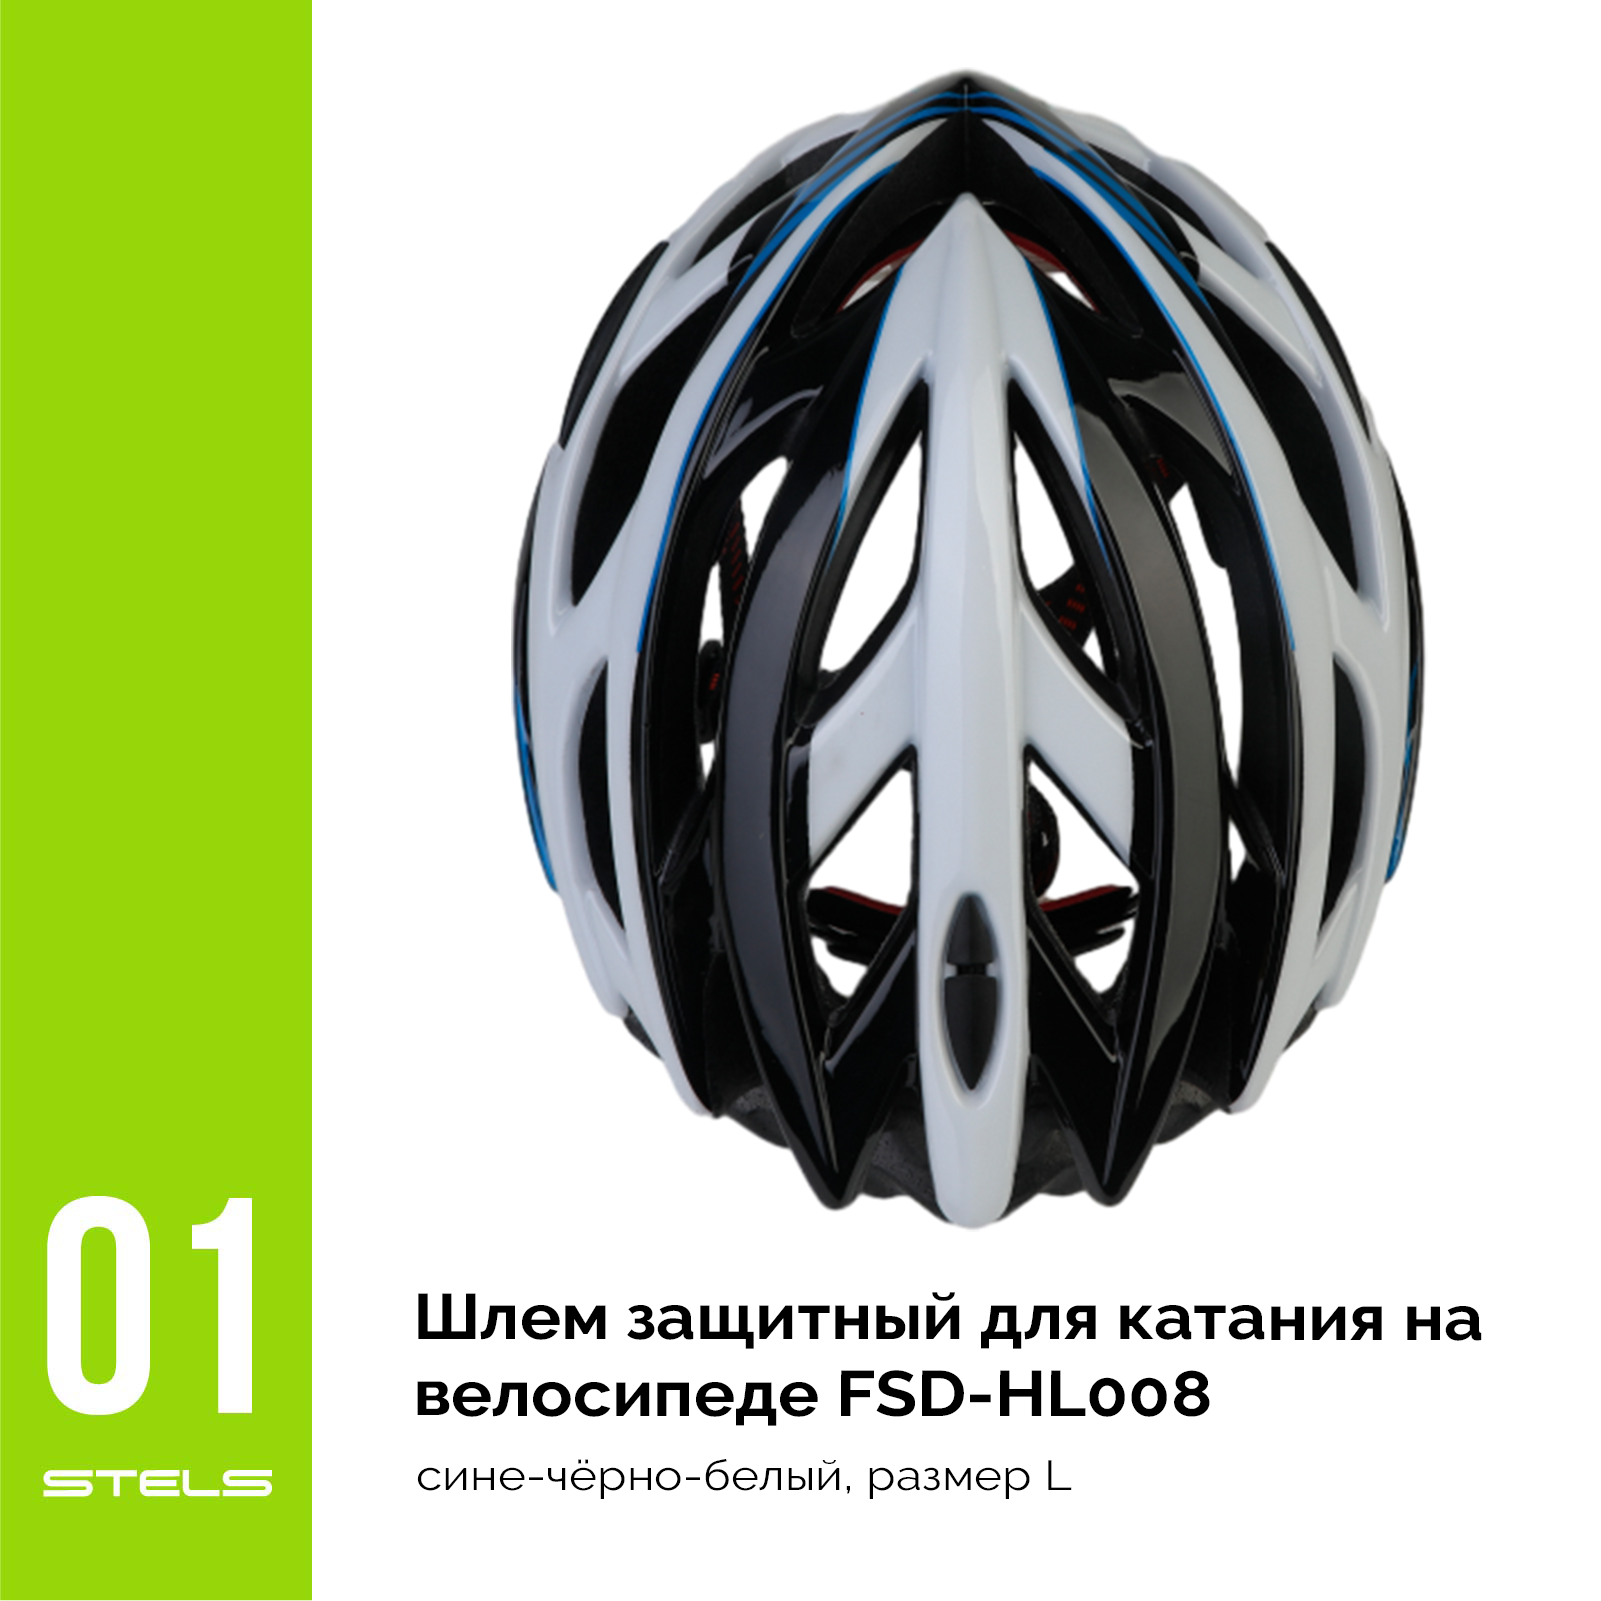 Шлем защитный для катания на велосипеде FSD-HL008 (in-mold) сине-чёрно-белый, размер L VELOSALE